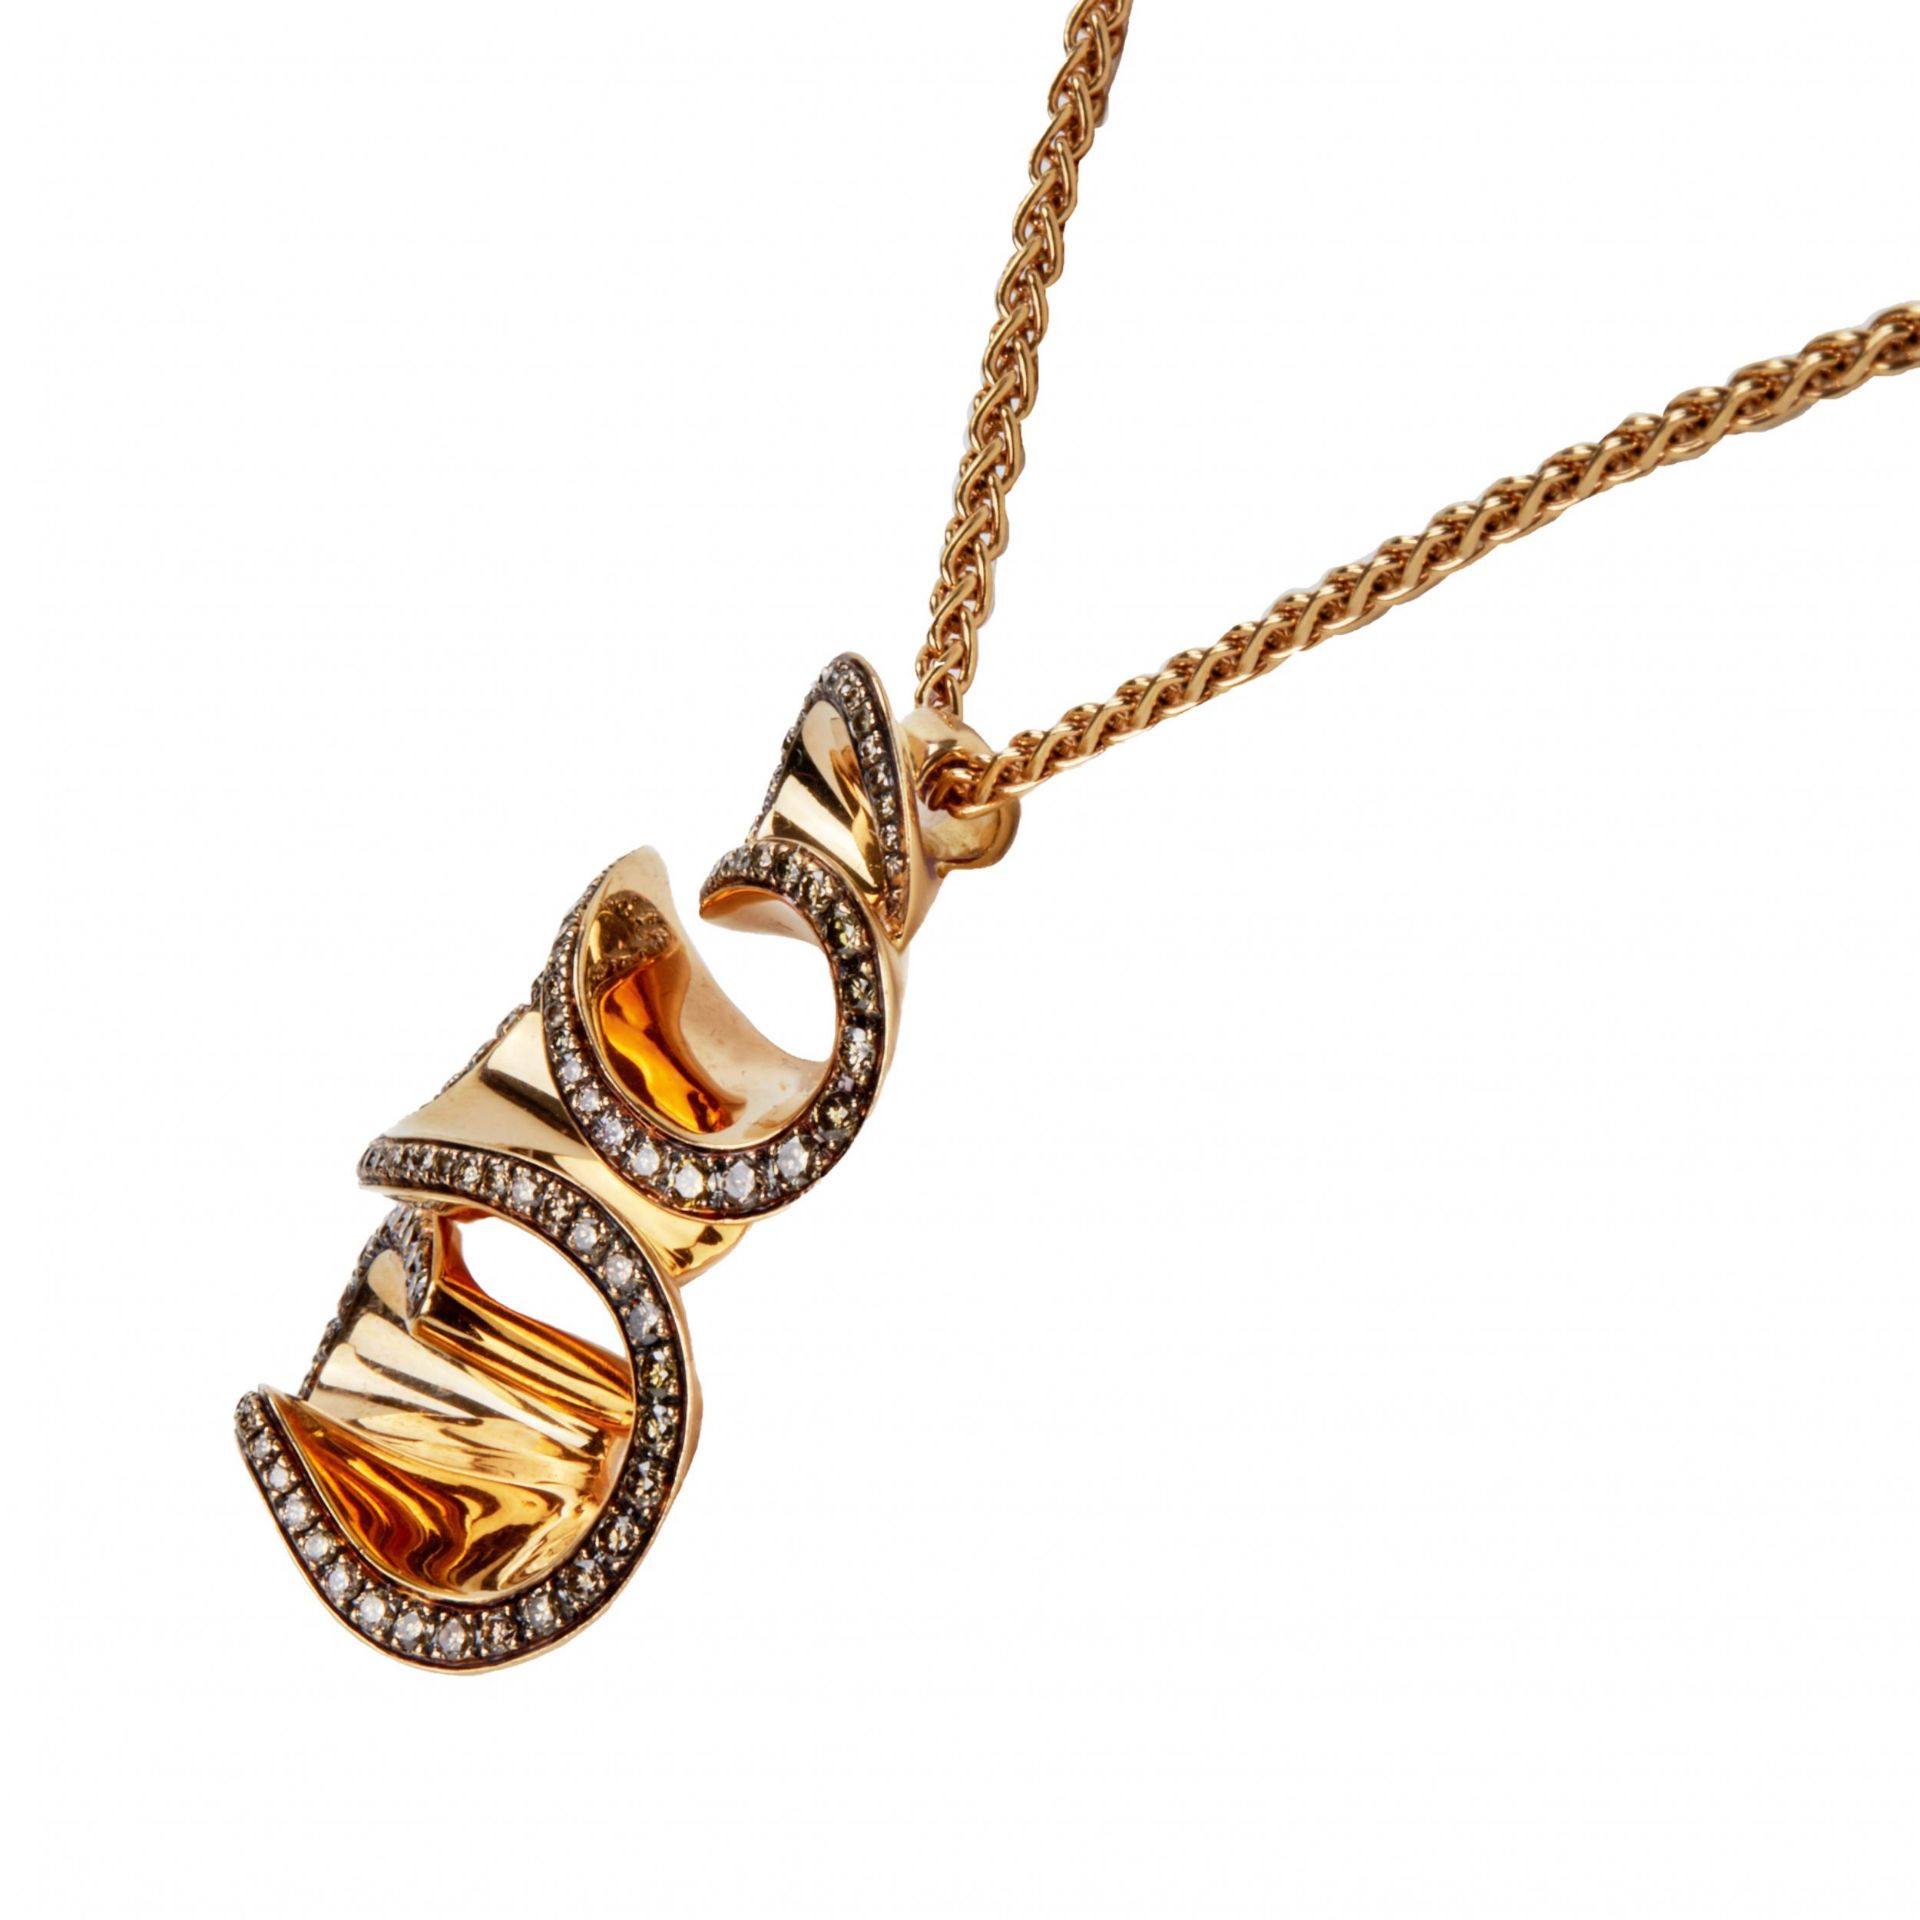 Grisogono Zigana gold necklace with diamonds. - Image 3 of 8